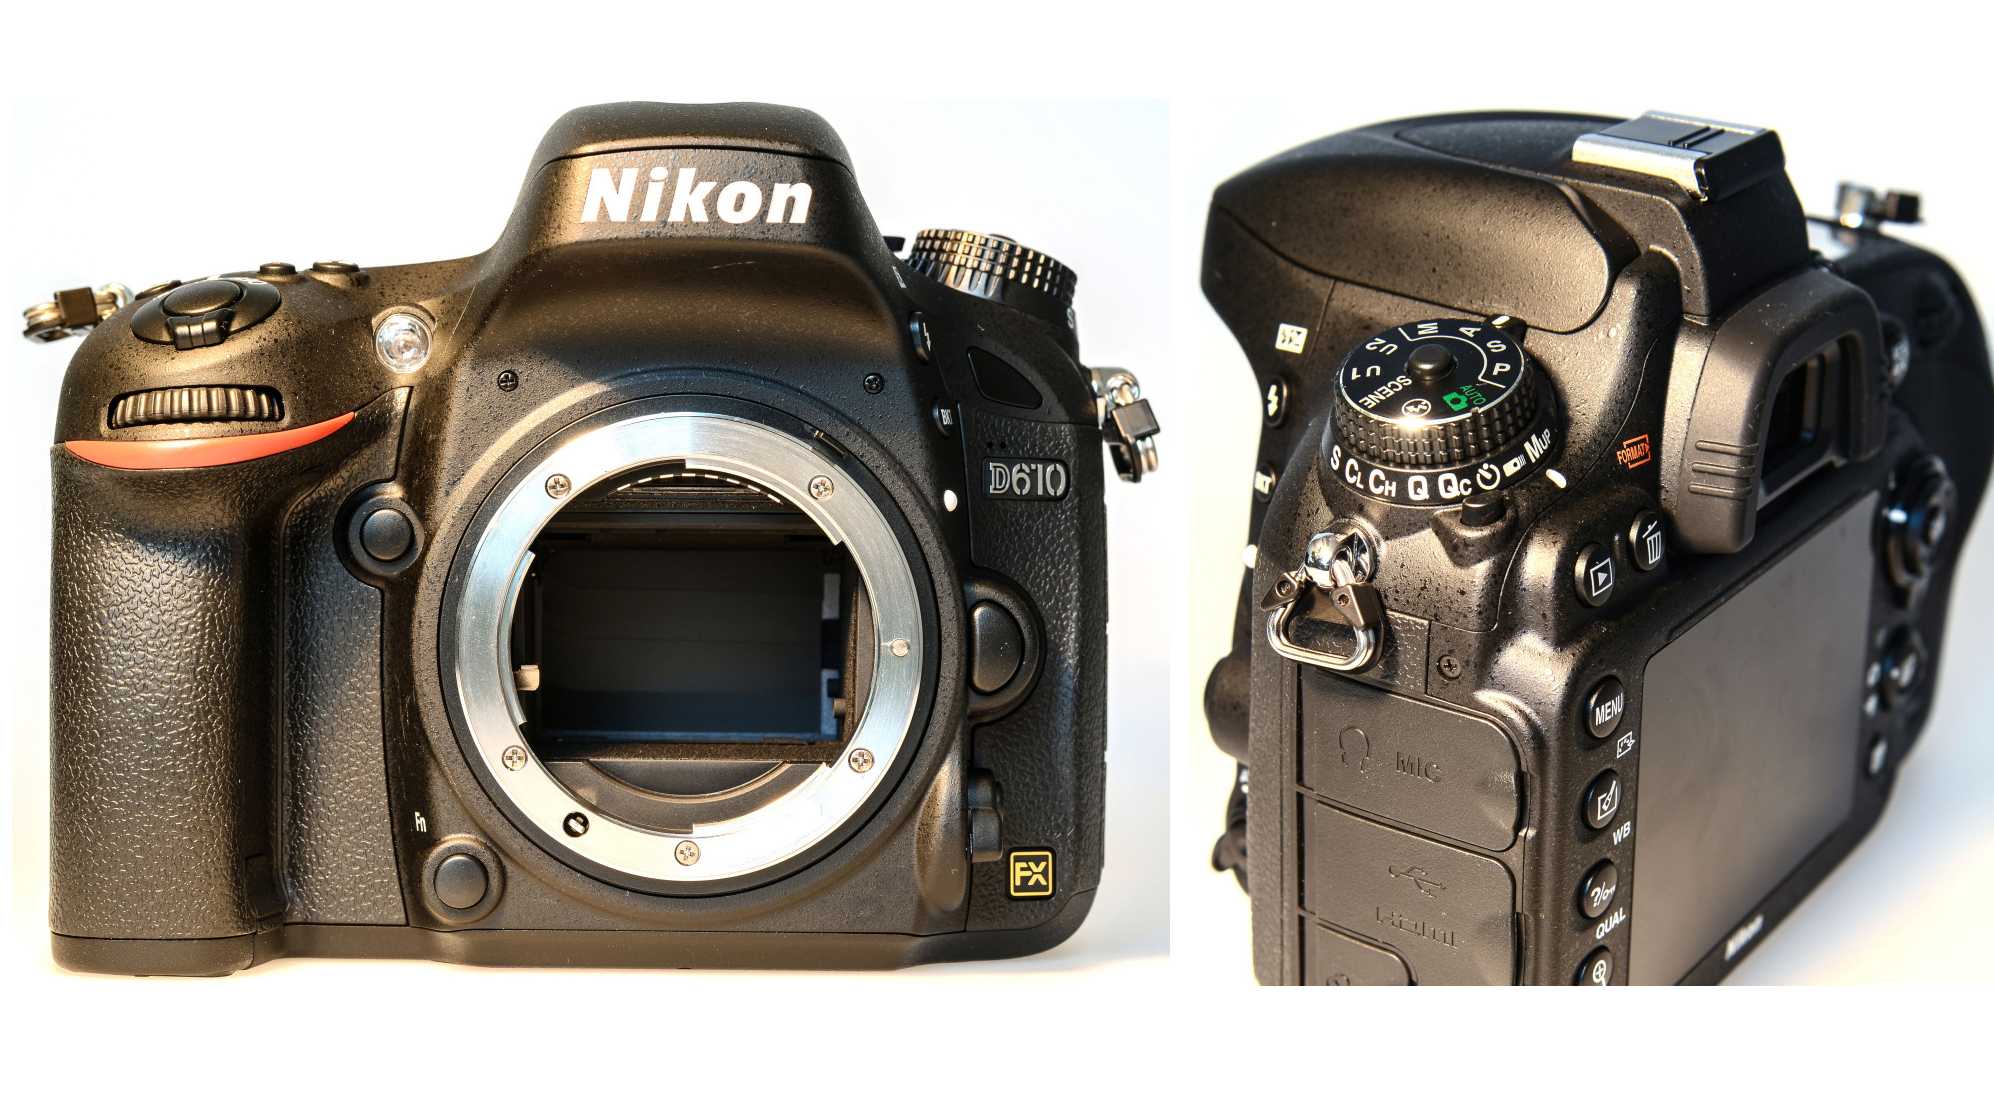 Kurztest: Nikon D610